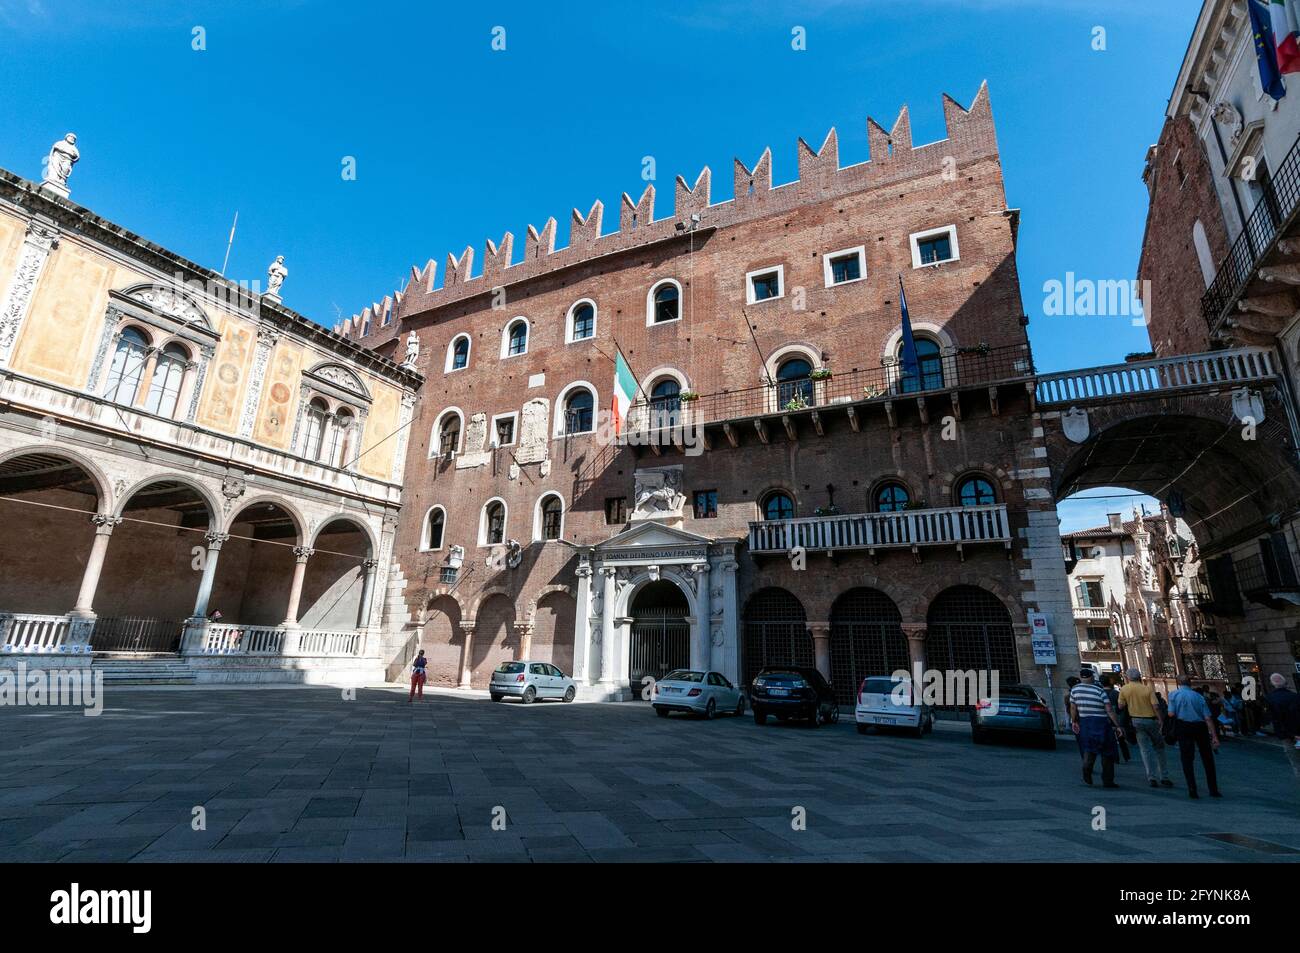 Los turistas deambulan por la Piazza dei Signor en la ciudad medieval de Verona, en la región del Véneto, al norte de Italia. Foto de stock